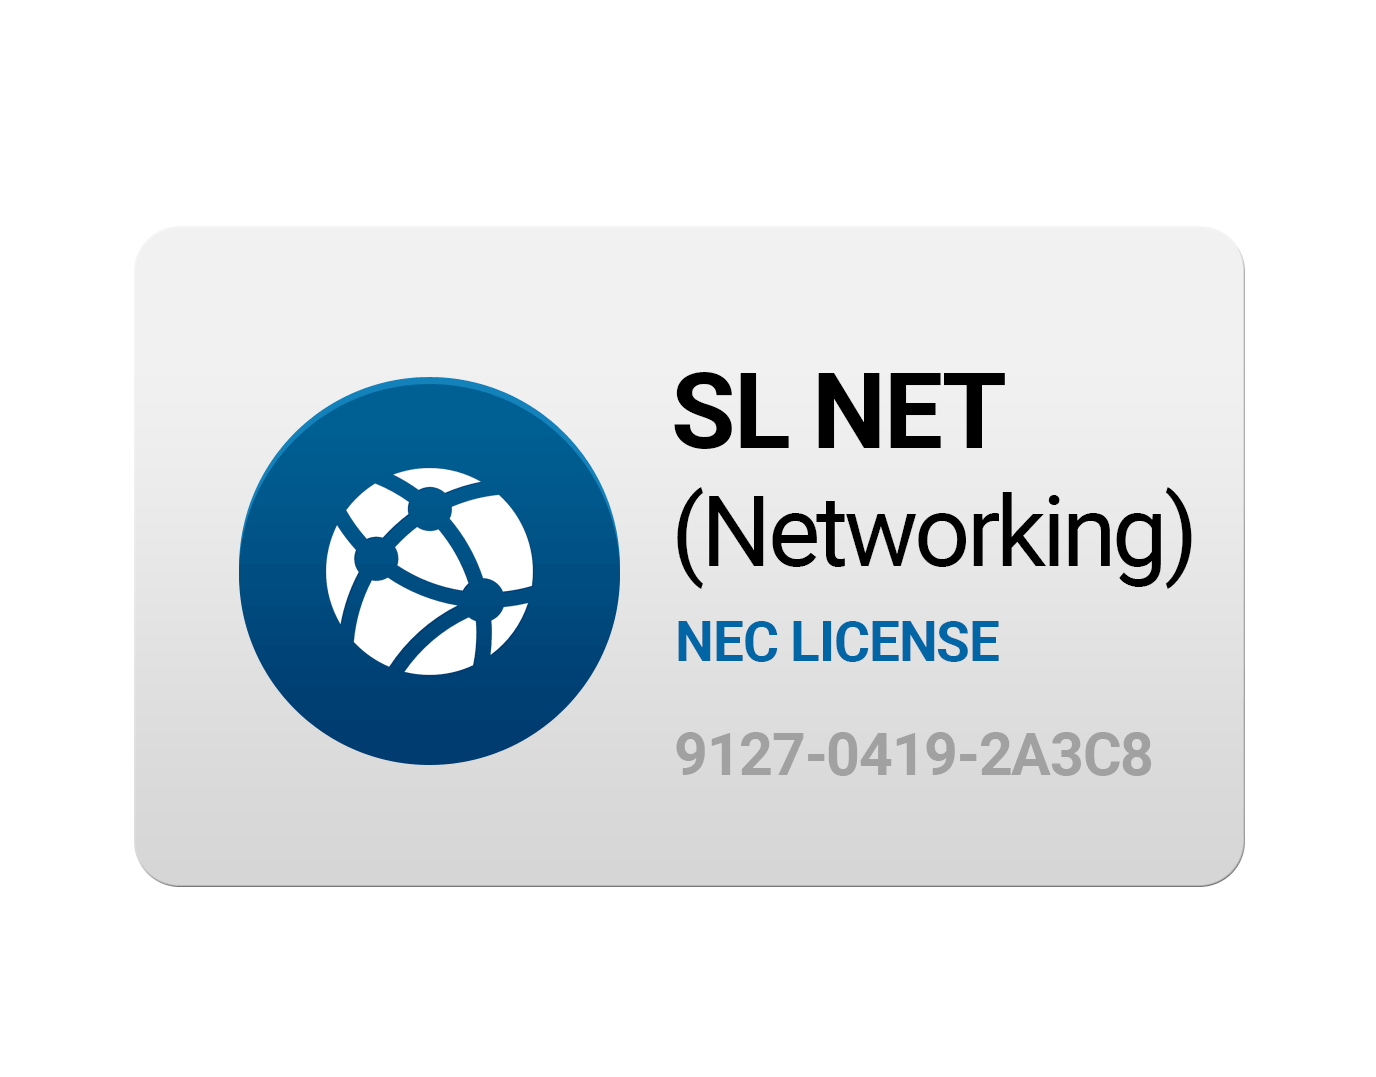 SLNet License 1100092